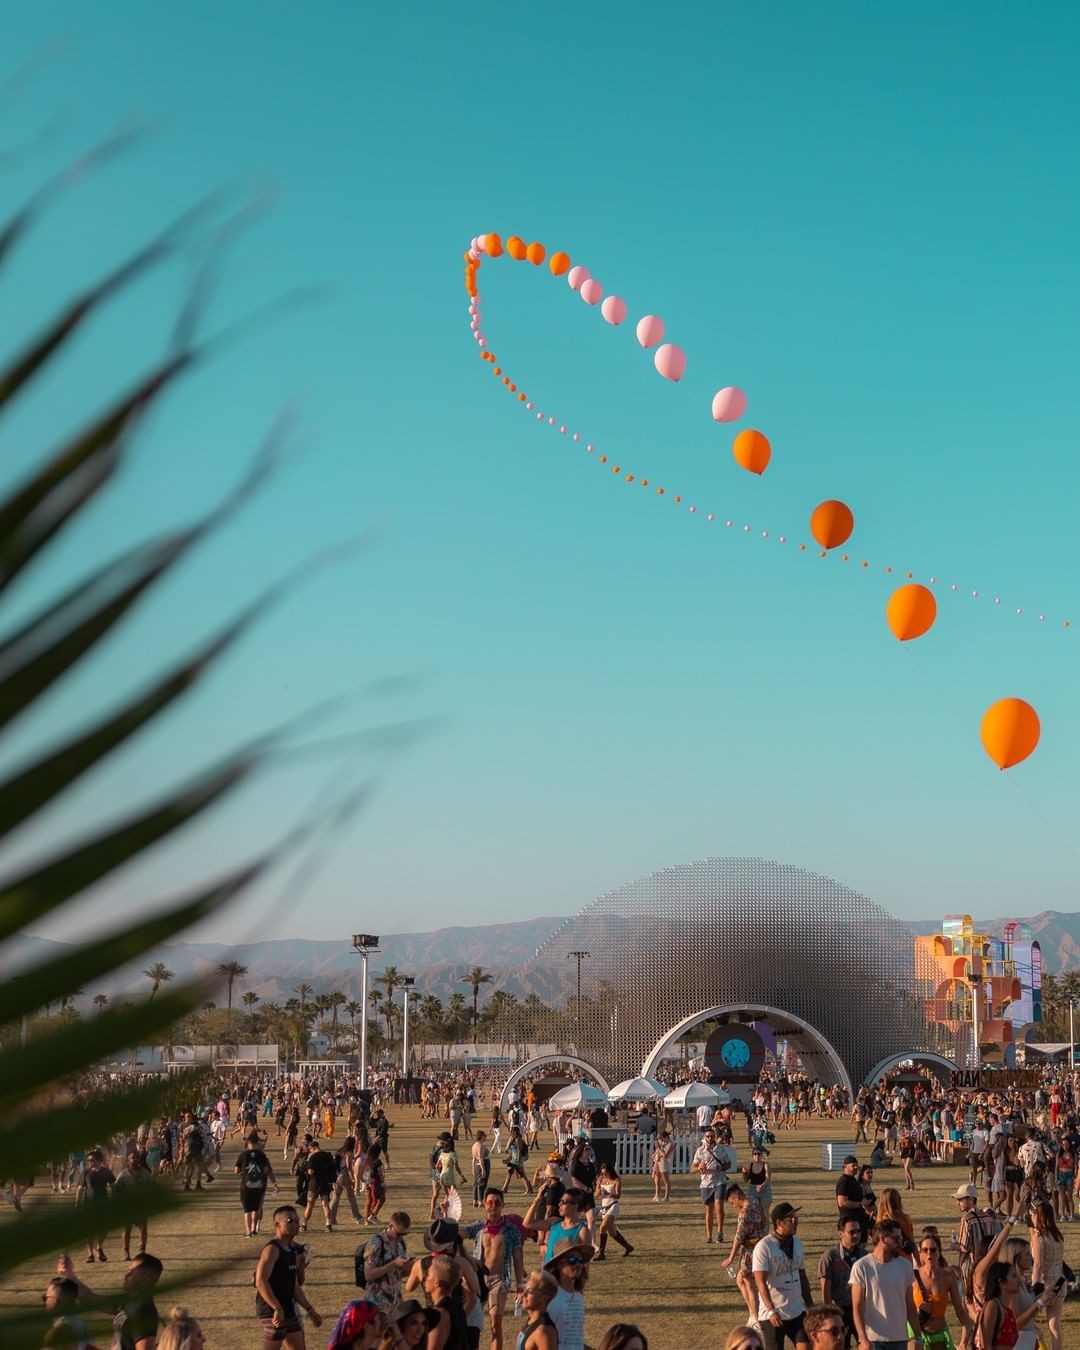 Os balões coloridos deixam o céu do deserto ainda mais colorido (Foto: Calder Wilson / Reprodução / Instagram / Coachella)